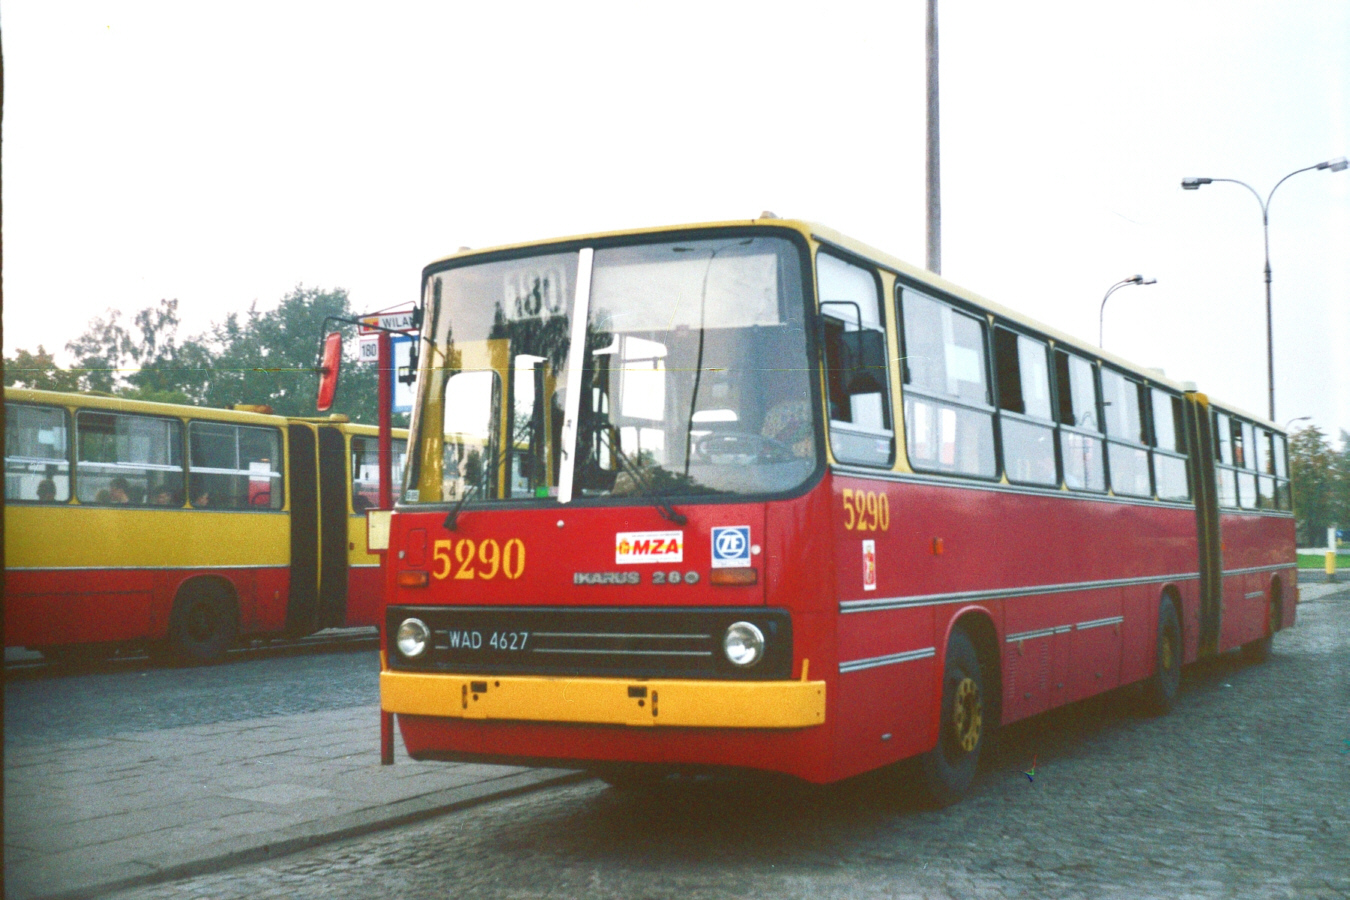 5290
Ikarus 280, produkcja 1992 (ex 2930 / A305), kasacja 2010.
Przedstawiciel rocznika 1992 miał trudną historię. Został wpisany na stan zakładu R-9 Chełmska w dniu 1 stycznia 1993. Dostał numer taborowy 2930 ze starego zakresu numeracji. Zajezdnia R-9 Chełmska jako jedyna nadała Ikarusom z dostawy '92 numery według dawnego schematu. Najeździł się tylko kilka miesięcy. W trakcie strajku MZK na początku 1993 roku został skonfiskowany przez Policję i przestał na parkingu przy ul. Łazienkowskiej kolejne miesiące. Następnie trafił do prywatnego przewoźnika AKPOL i służył tam z numerem taborowym A305, obsługując linię 117.
Po zajeżdżeniu i zdezelowaniu Ikarusów przez firmę AKPOL, wóz powrócił do zajezdni przy Chełmskiej w wakacje 1995 i przeszedł pobieżny remont. Otrzymał nowy numer taborowy 5290 i pod koniec września rozpoczął ponowną służbę. Dostał go kierowca, który wcześniej jeździł wozem 2933 po NG. Po likwidacji zajezdni R-9 Chełmska wóz trafił do zajezdni Stalowa i tam dożył do roku 2010.

Foto: P.B. Jezierski
